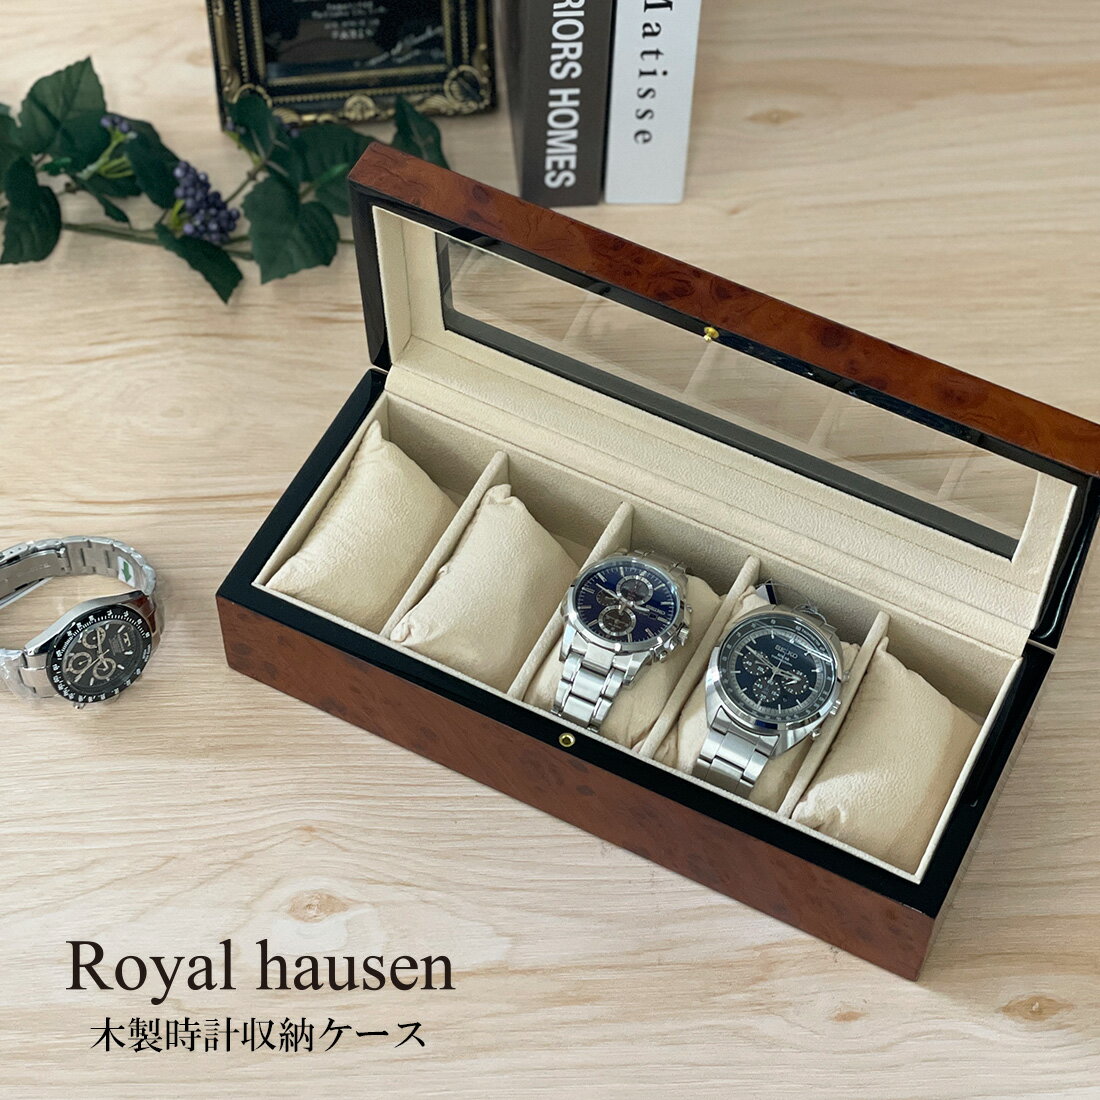 訳あり ボンド汚れ 外箱の傷み 小キズ等 木製時計収納ケース 5本用 時計ディスプレイケース Royal hausen ロイヤルハウゼン